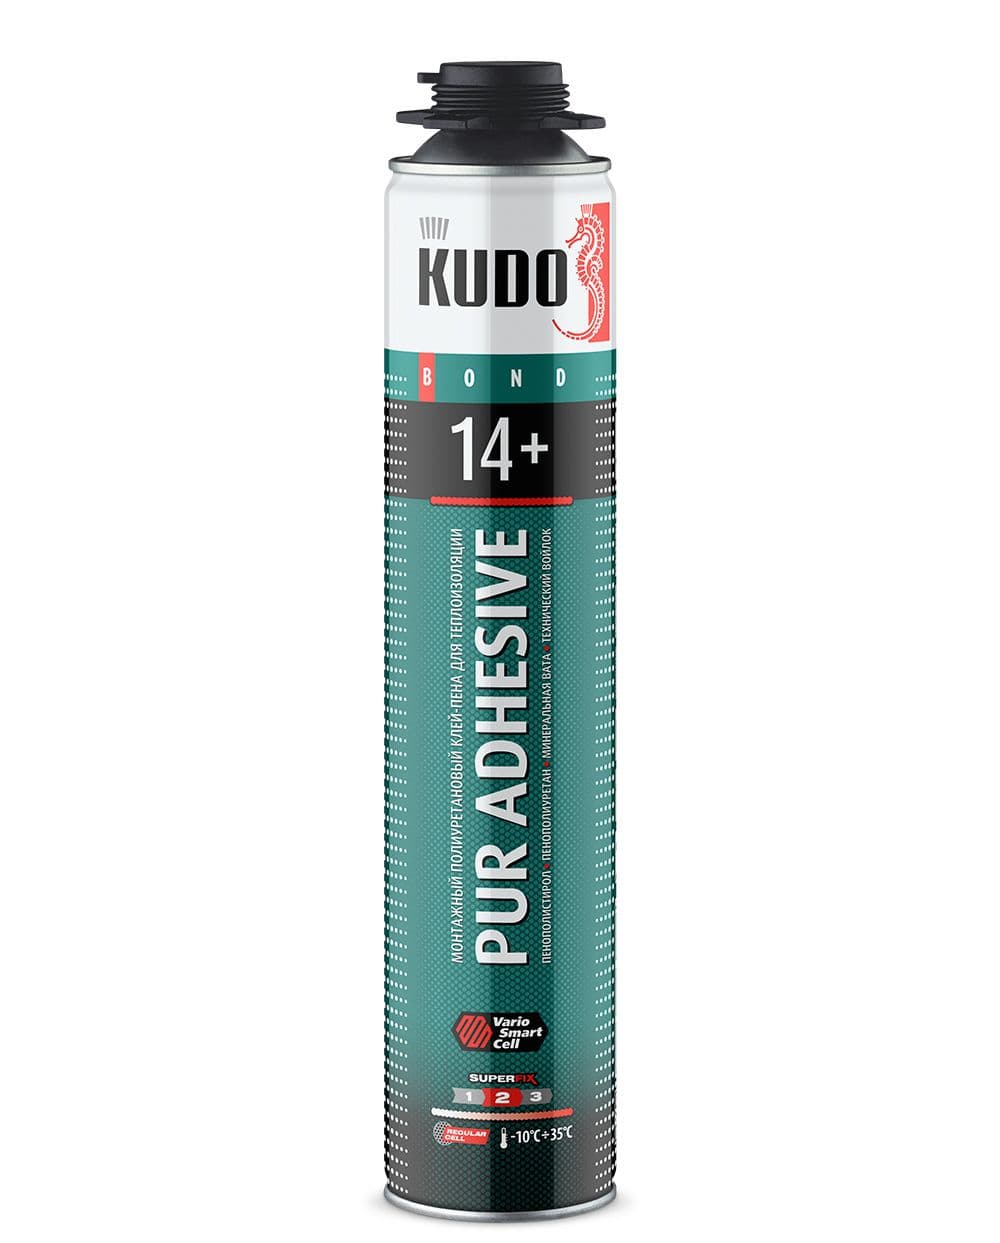 Монтажный клей-пена Kudo Proff 14 + Полиуретановый 1000 мл оптом и в розницу на сайте Сталь Крепеж